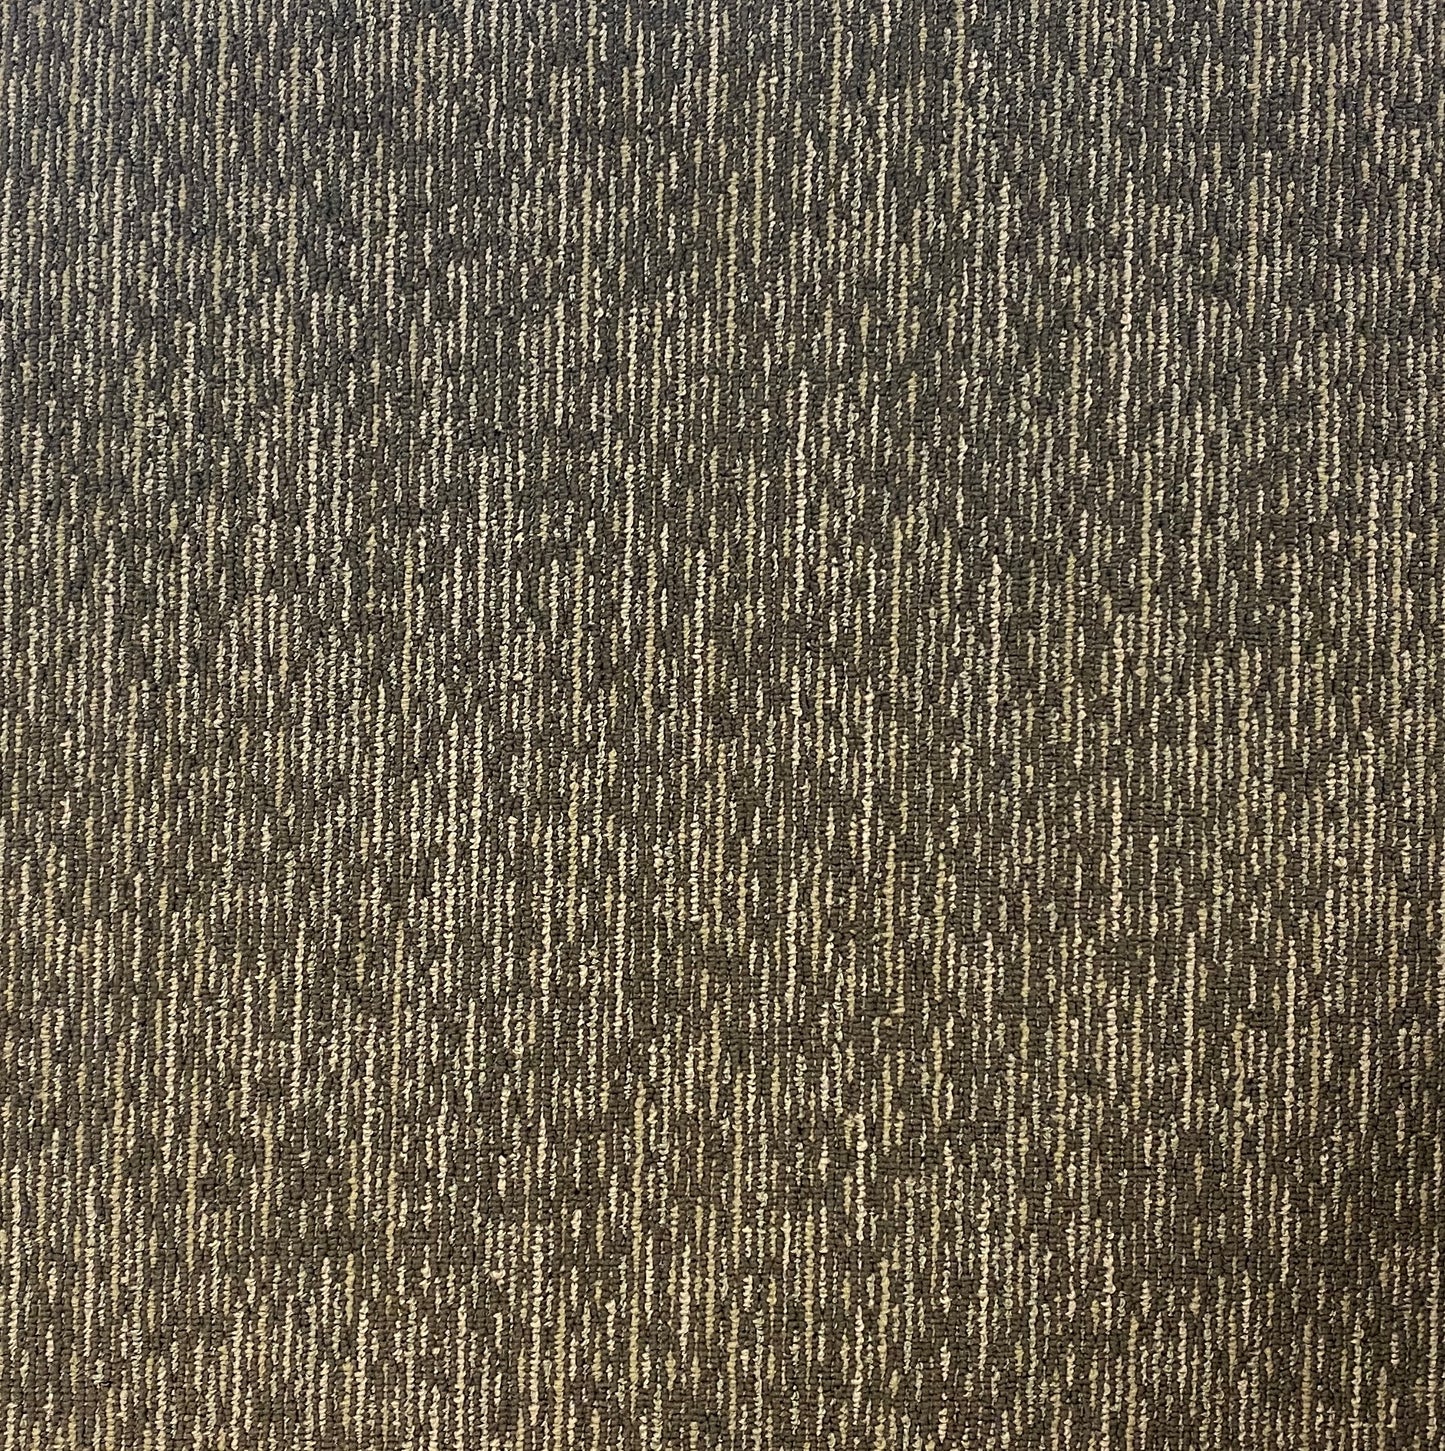 Shaw 00300 Carpet Tile-24"x 24"(12 Tiles/case, 48 sq. ft./case)